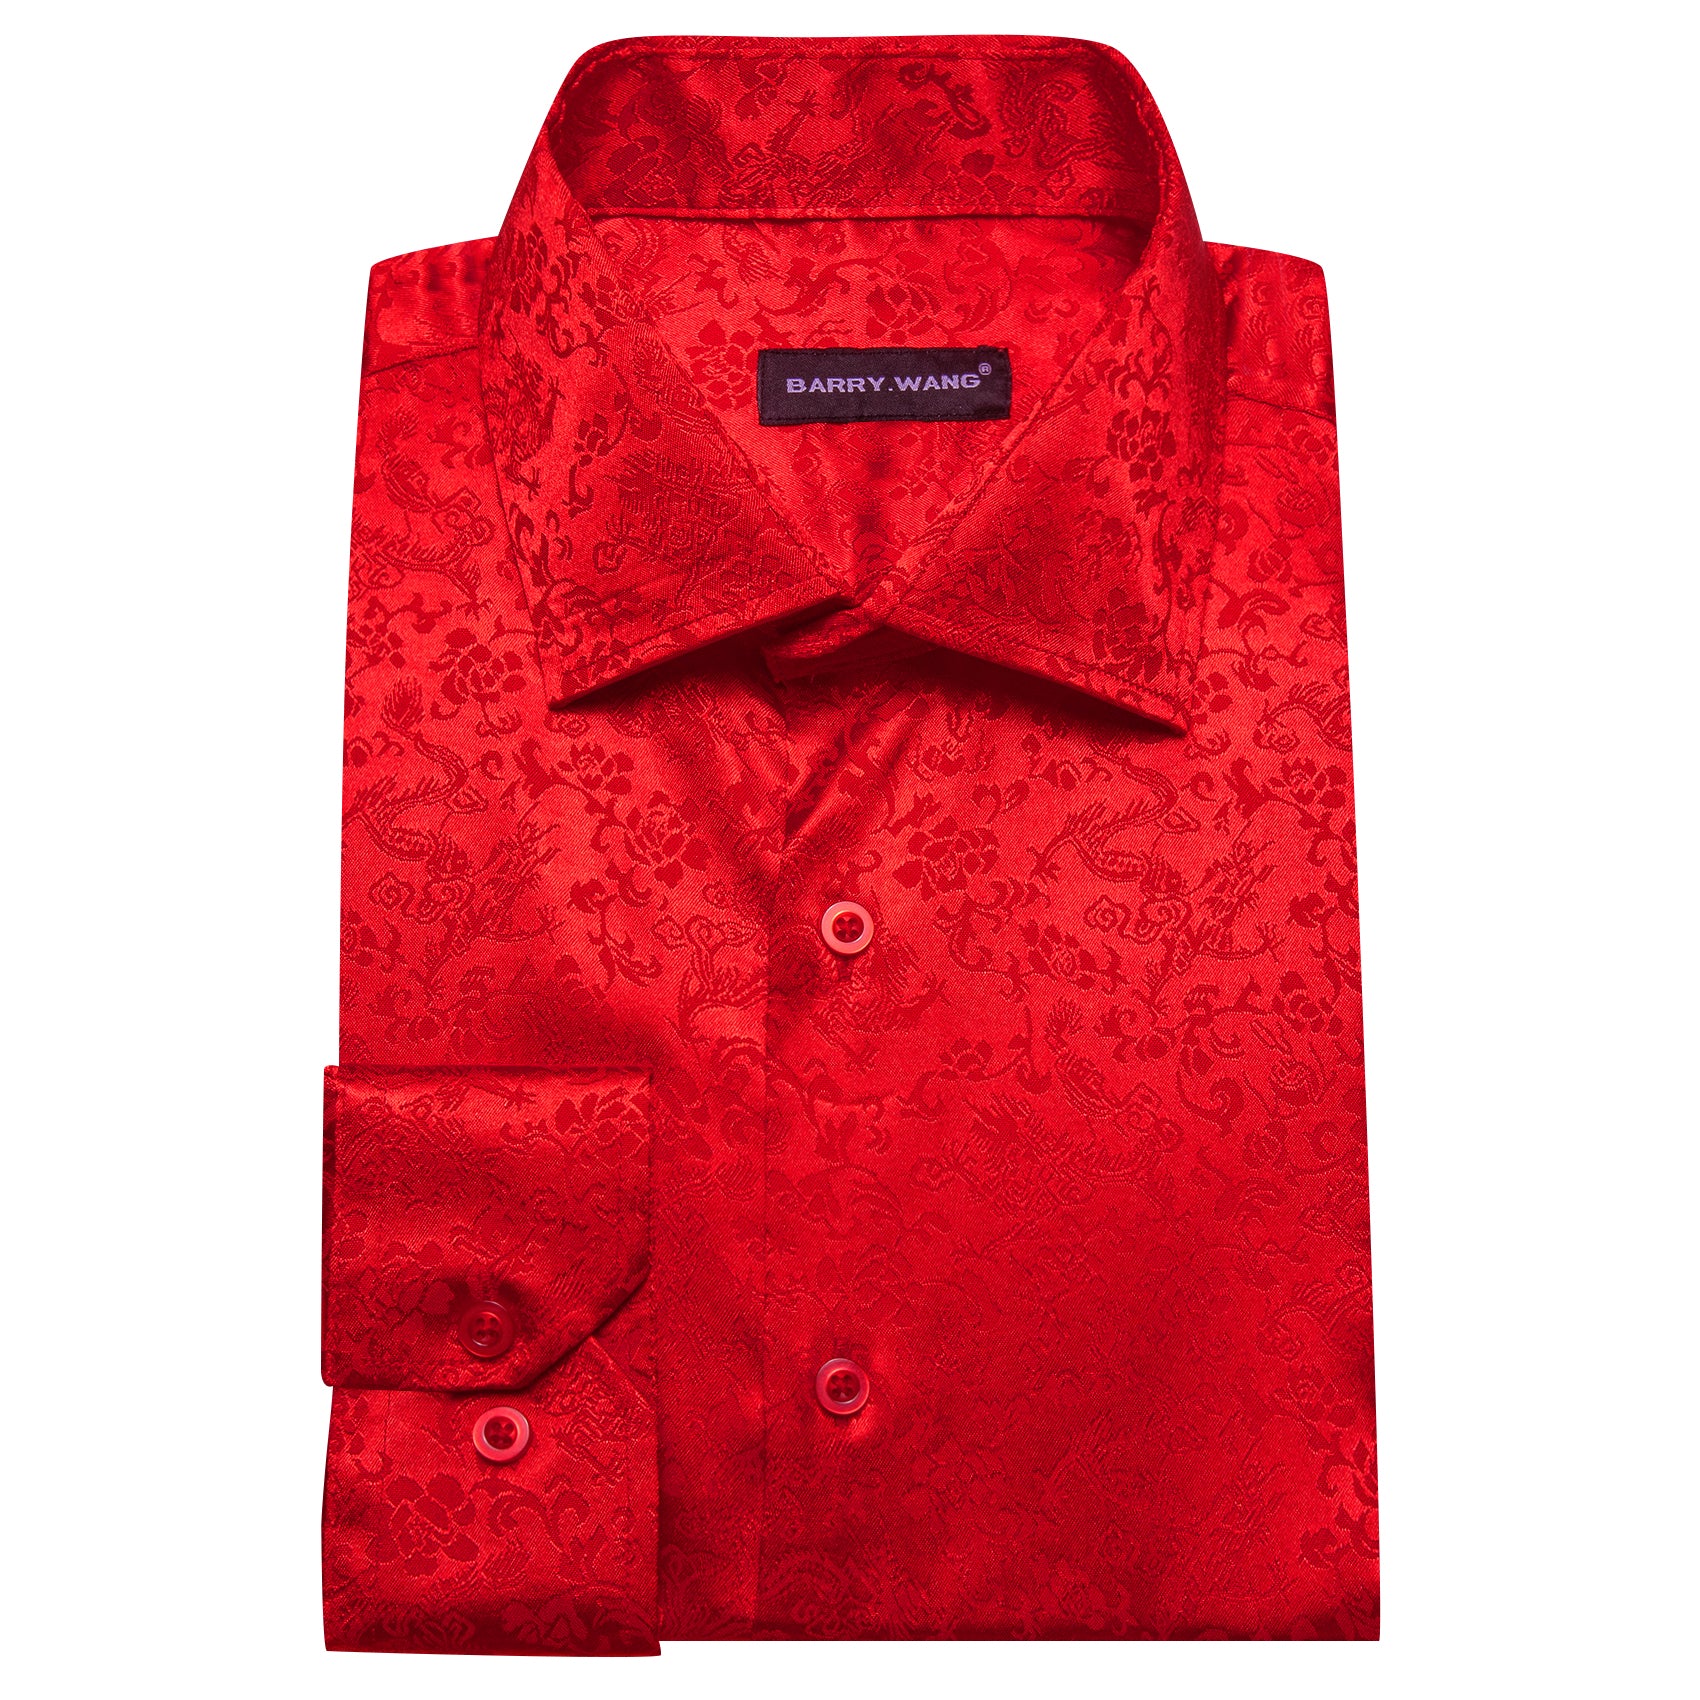 Barry.wang Strong Red Floral Silk Men's Shirt